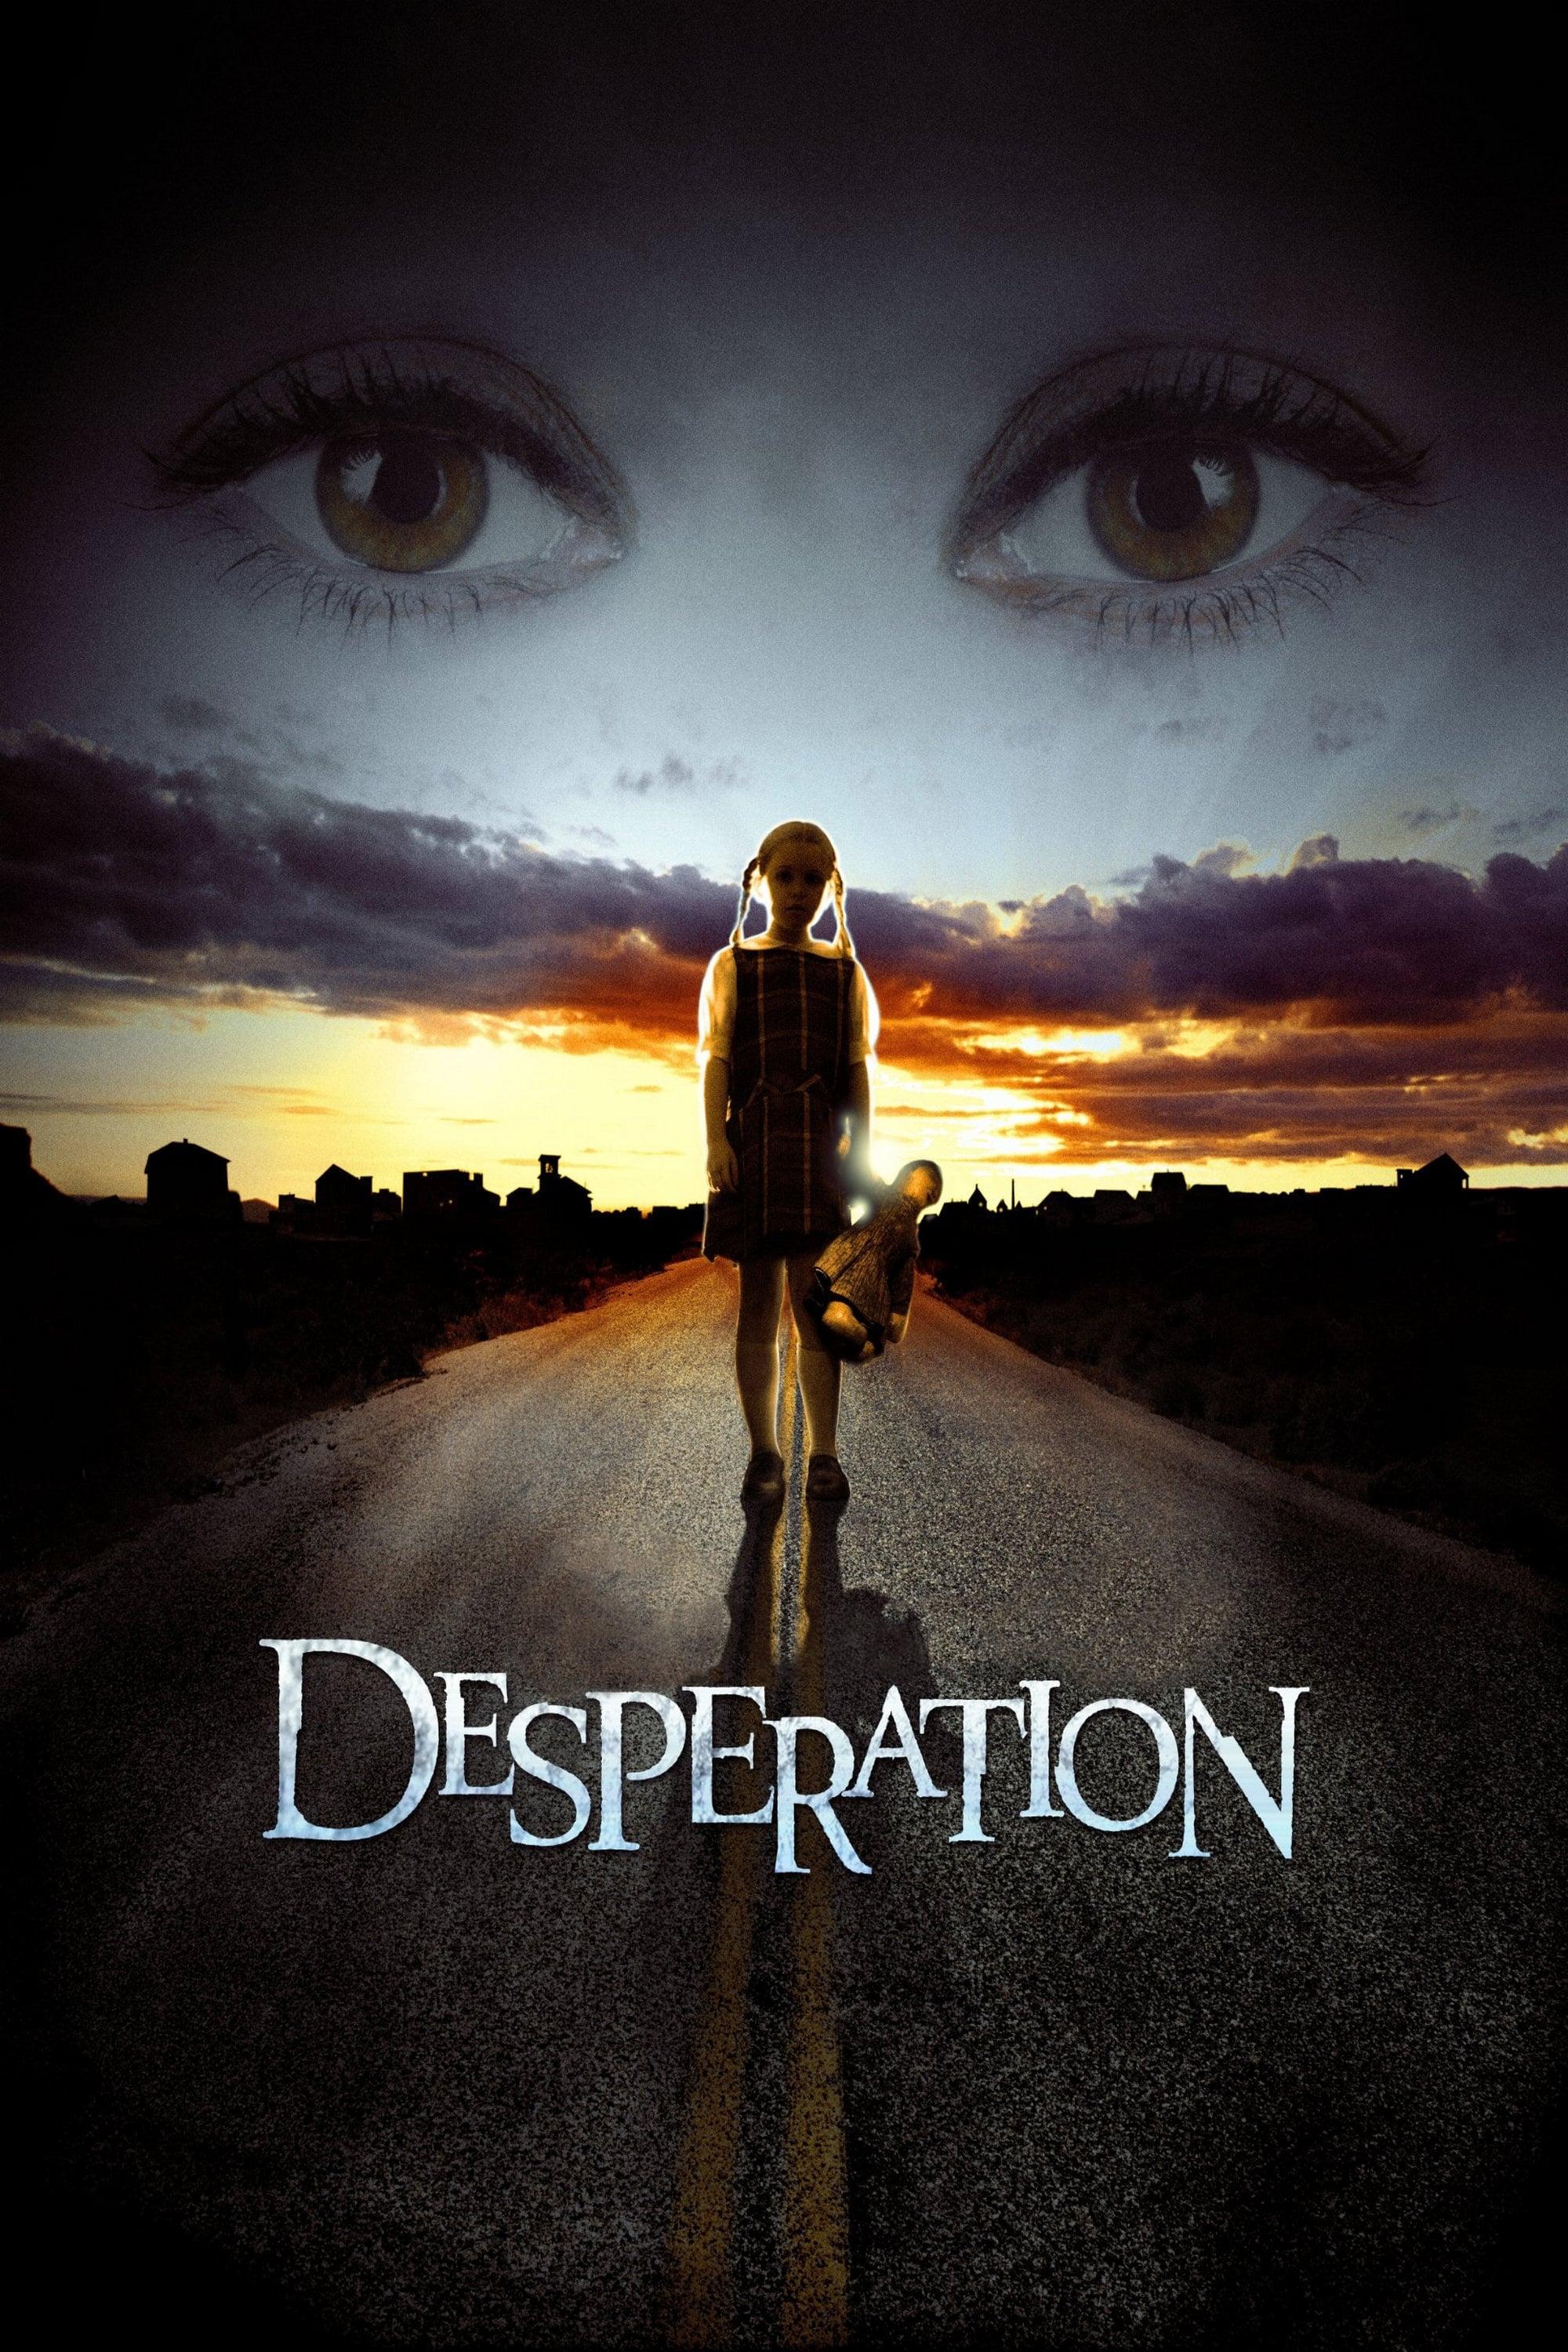 Stephen Kings Desperation poster